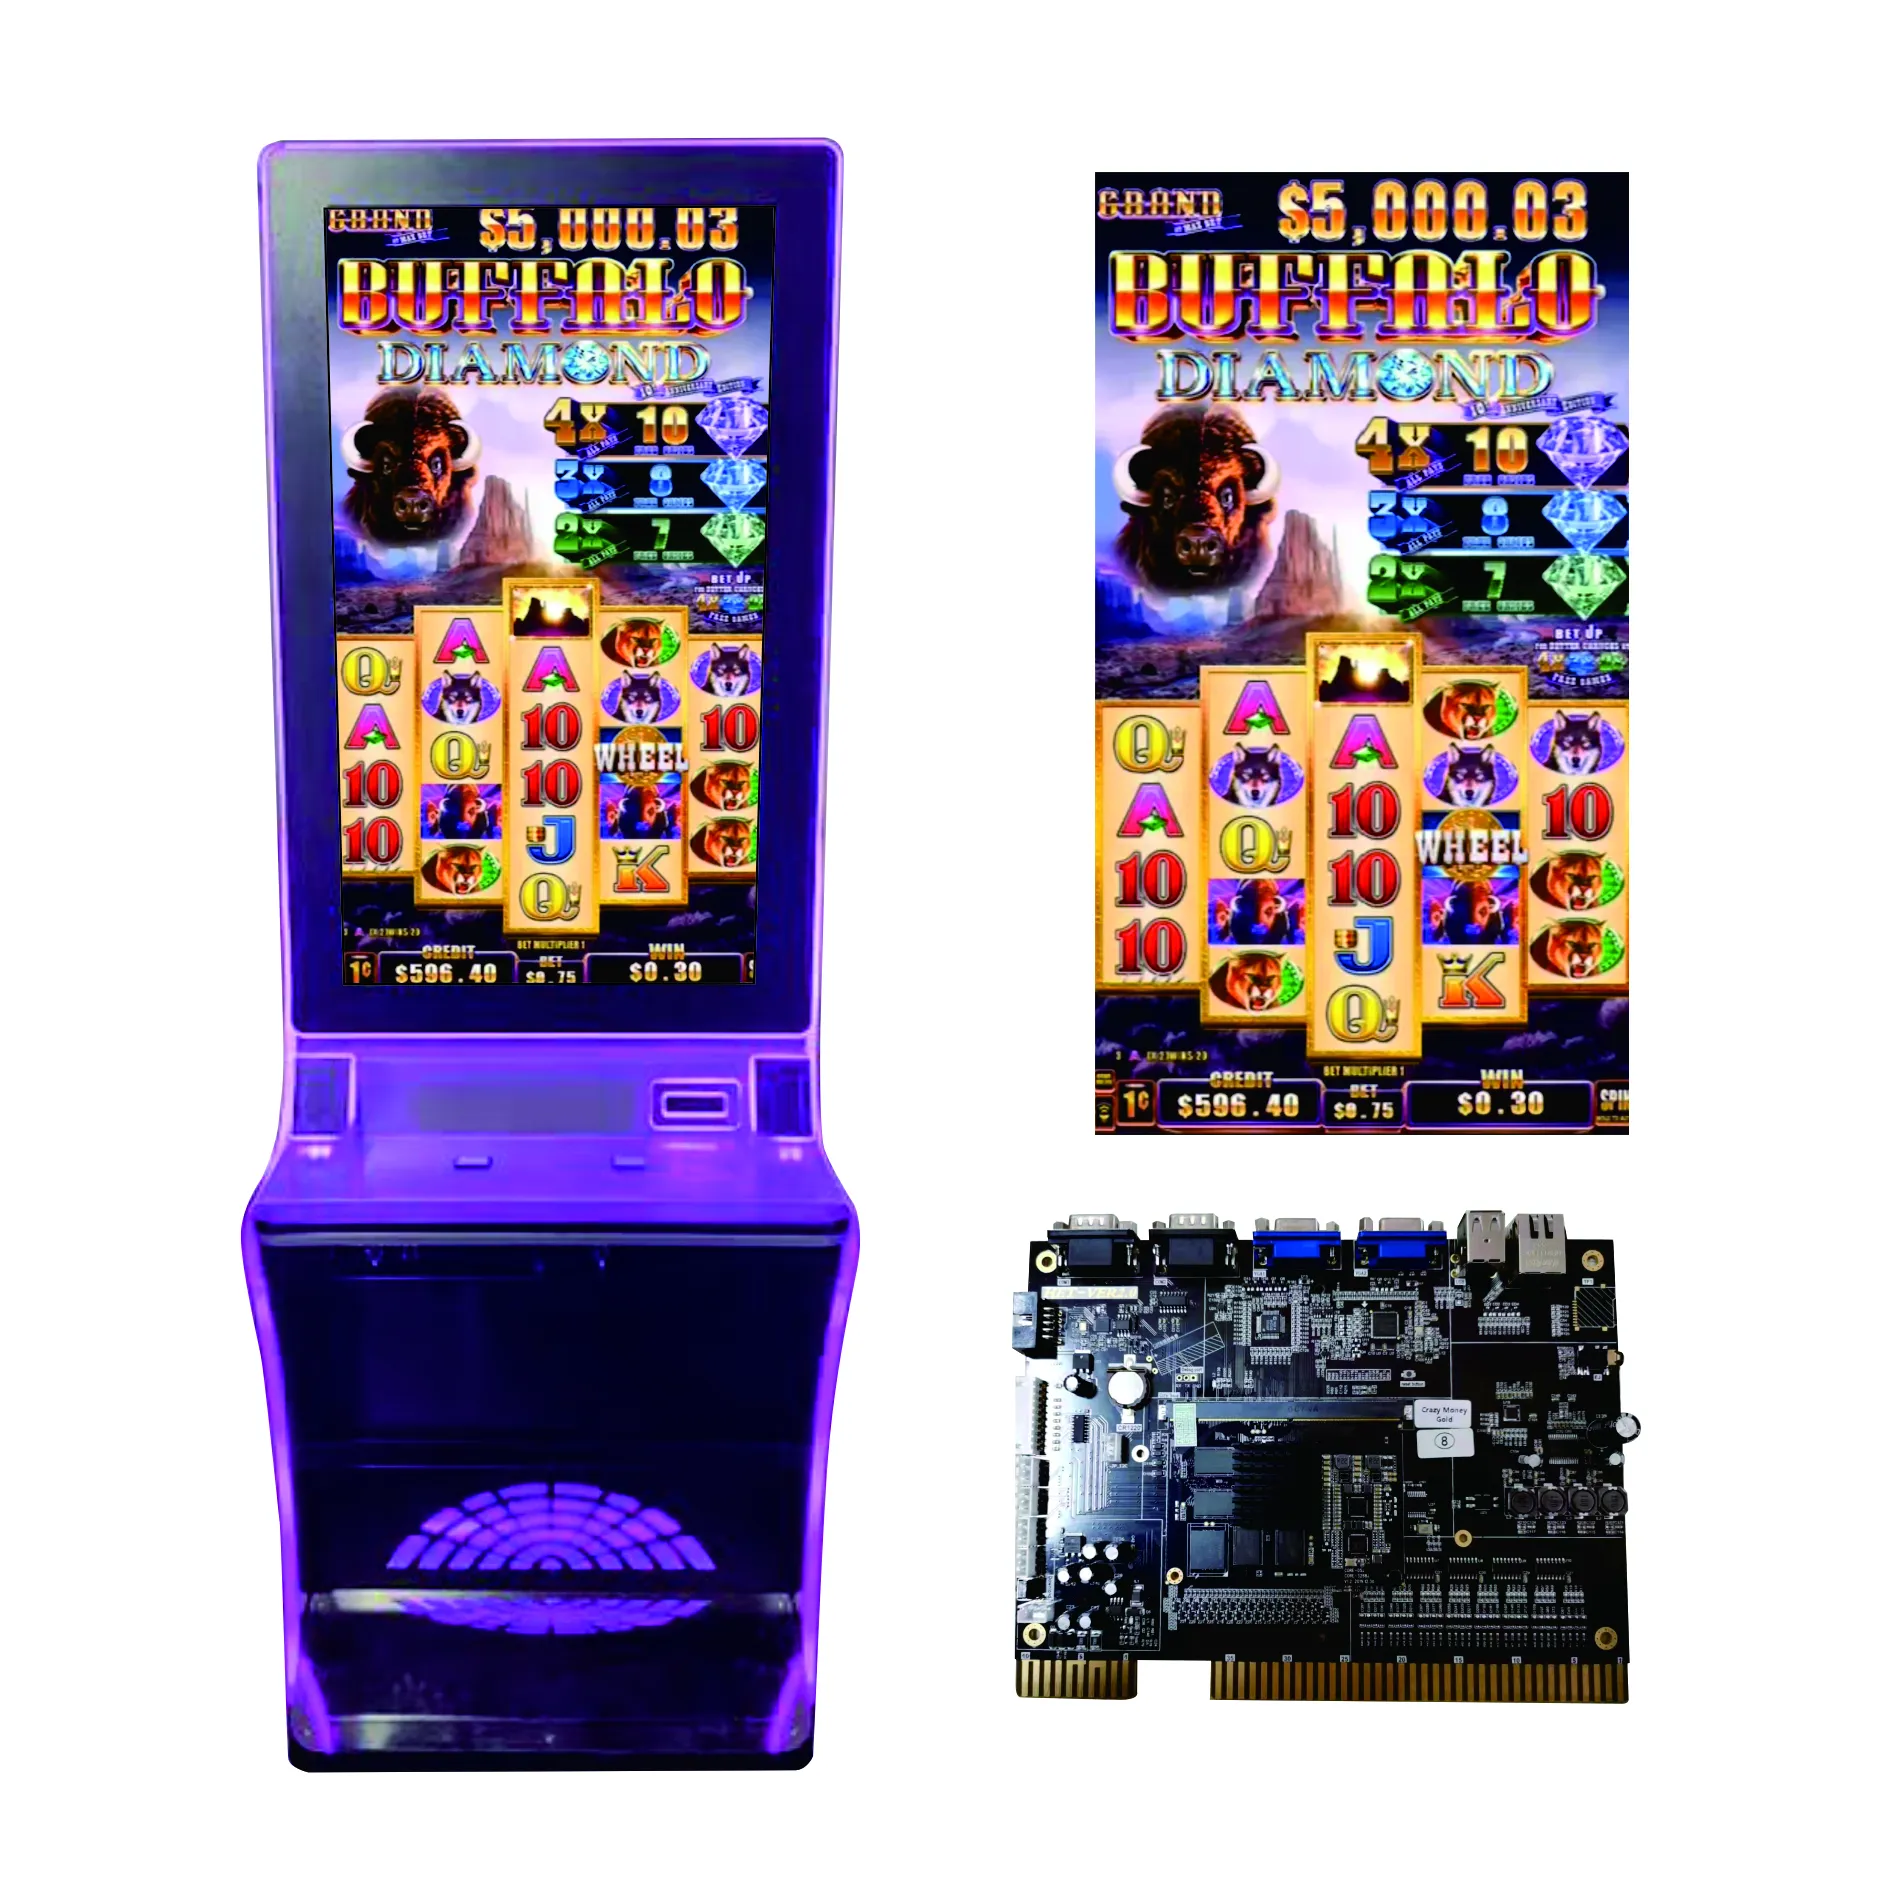 Borne de jeux vidéo multi-jeux avec écran tactile de 32 pouces, pot de couleur or, borne de jeux, fente murale